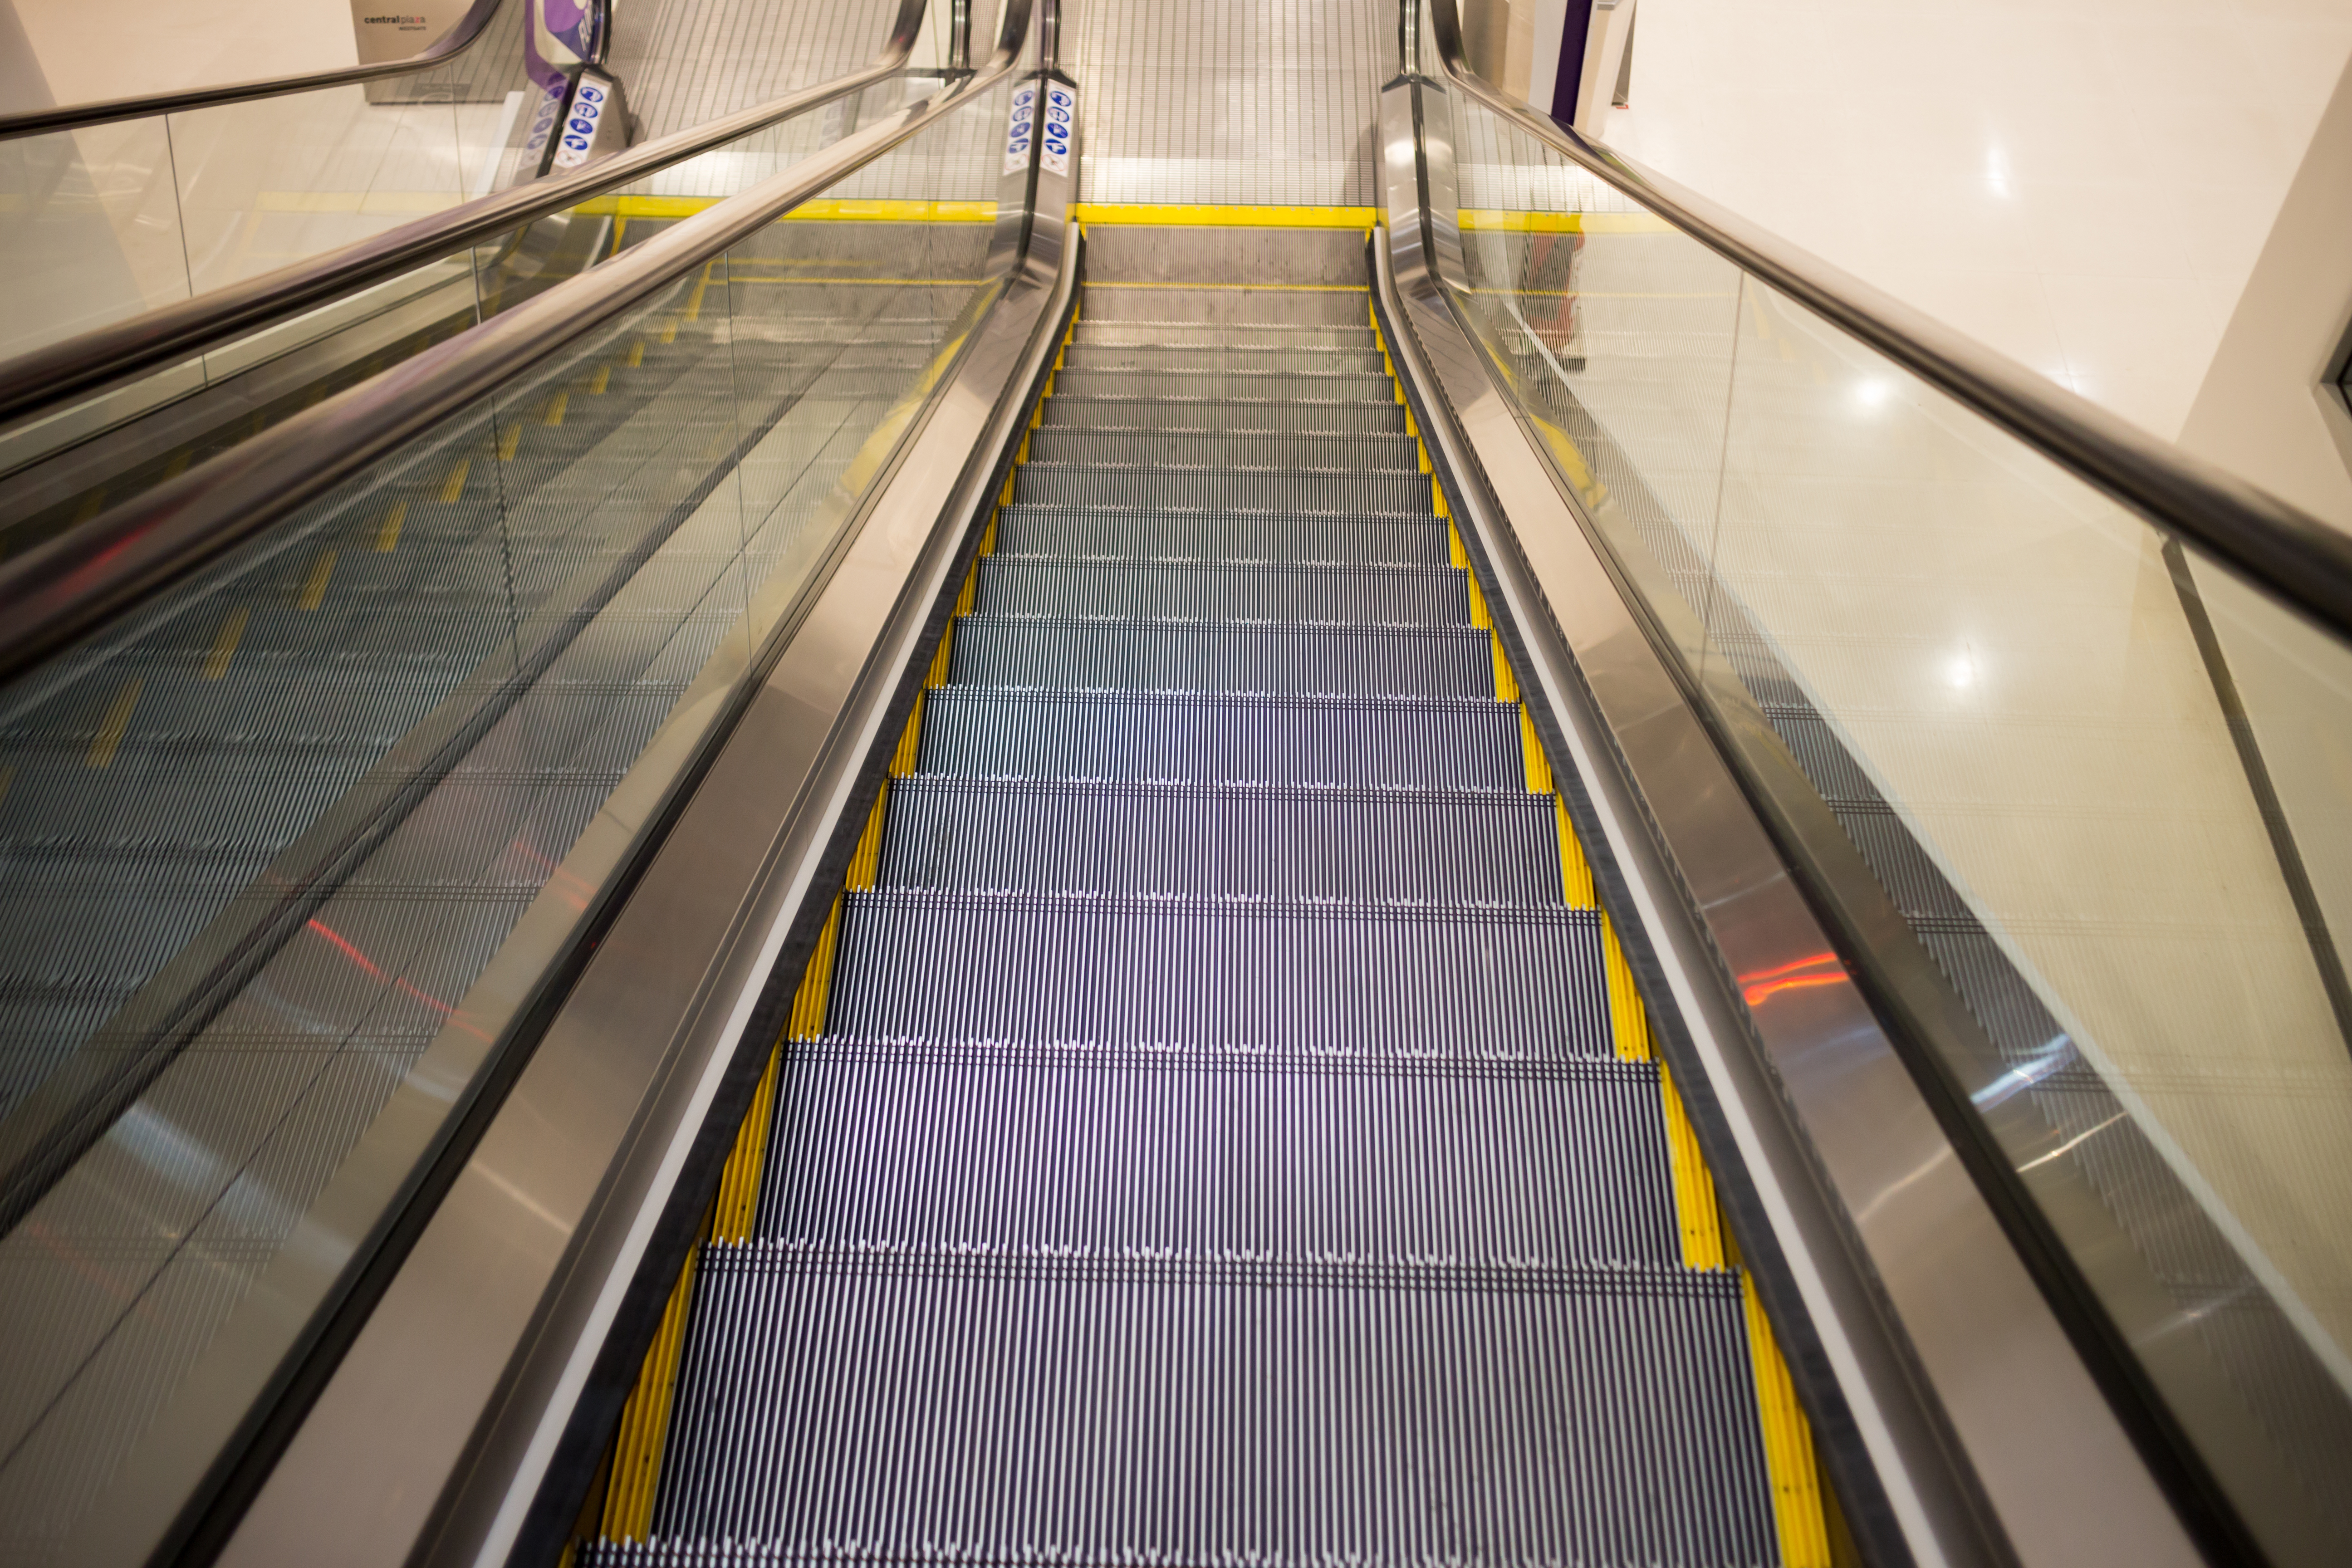 Urge cambias 197 escaleras eléctricas del metro